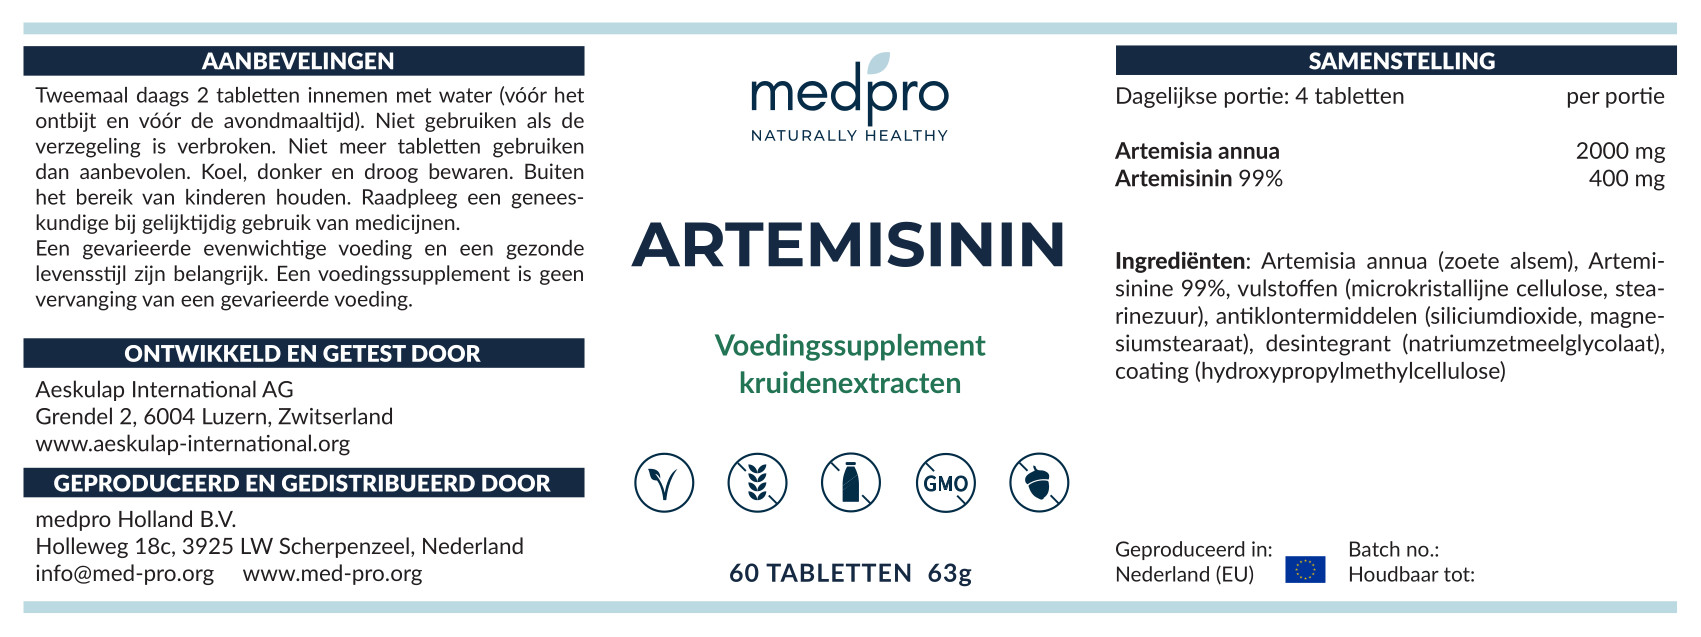 Artemisinin_label_NL